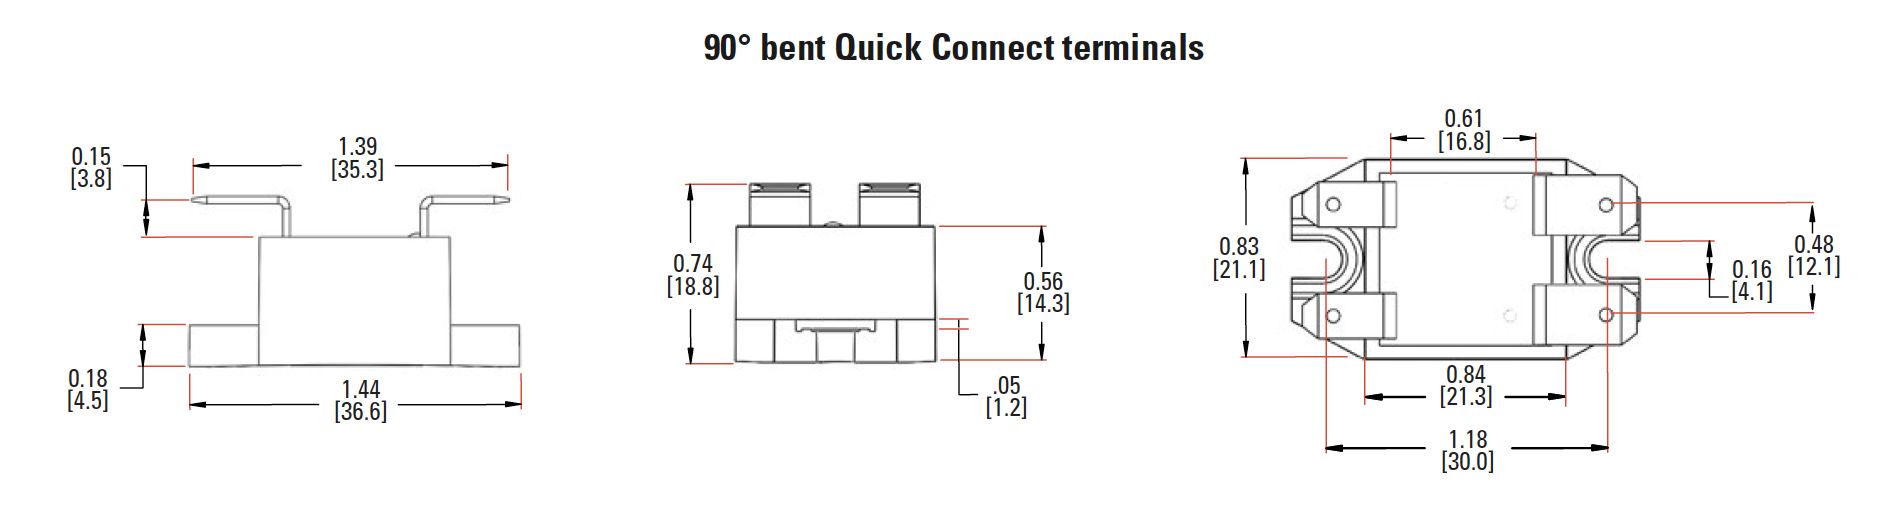 90 bent quick connect terminals dimension of ssr